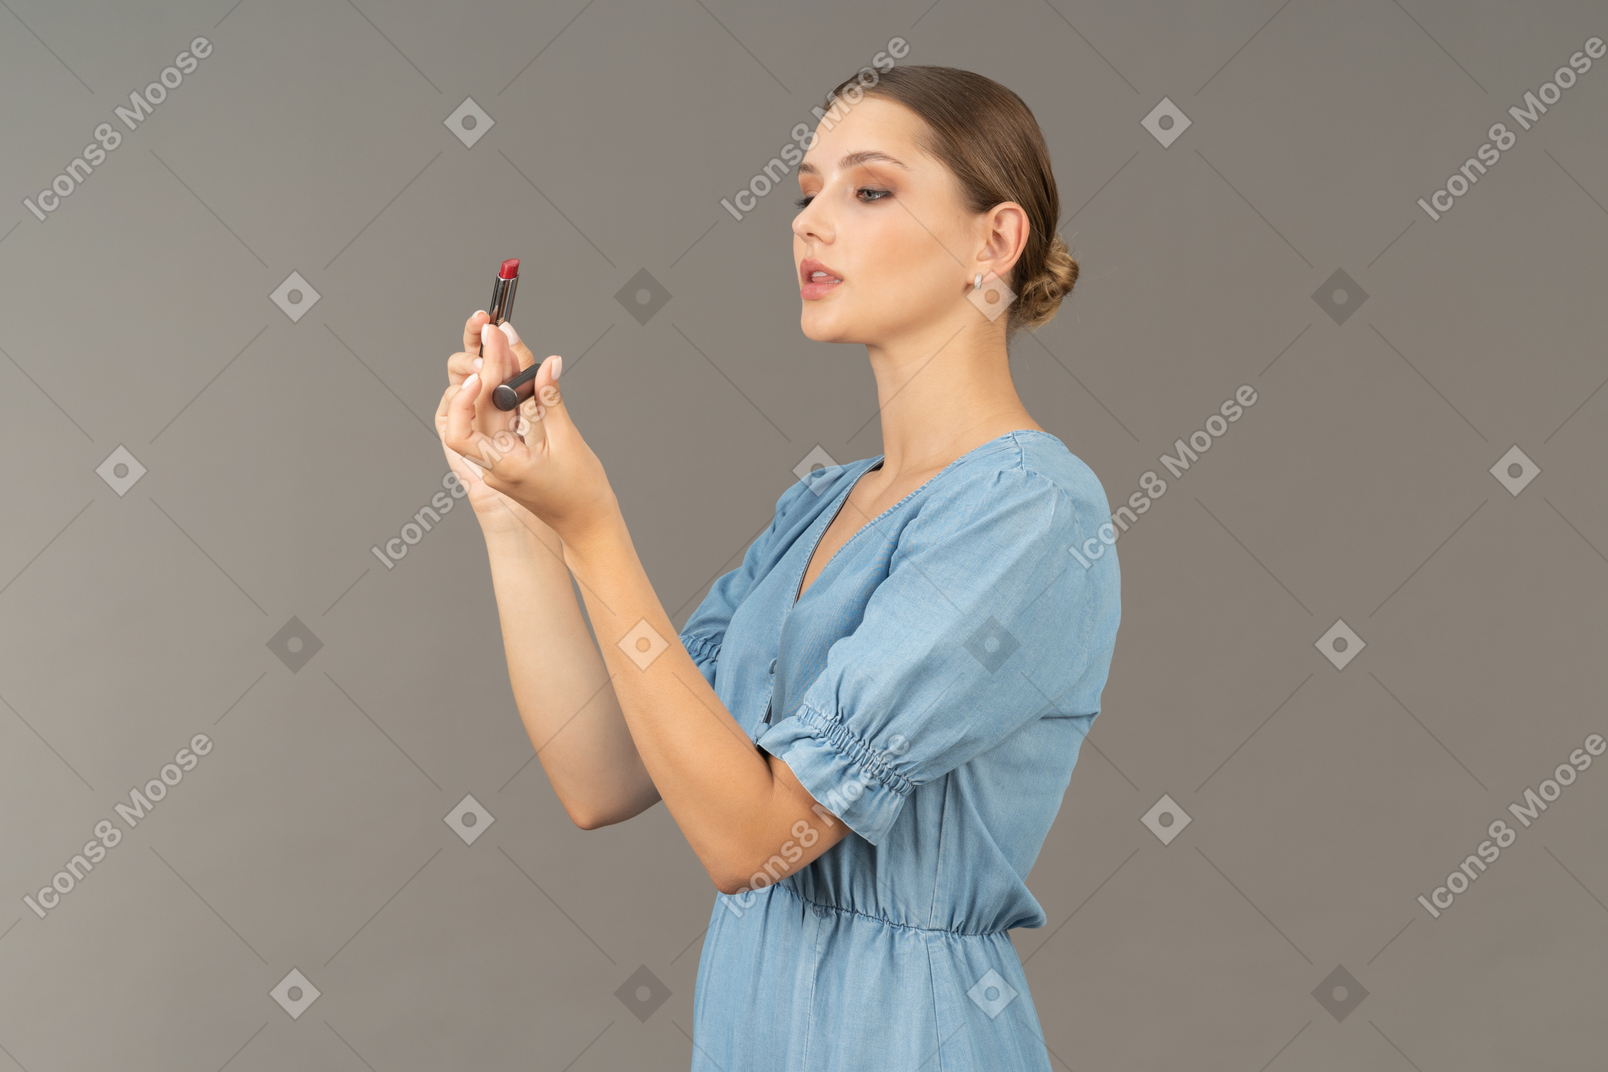 Vista de tres cuartos de una mujer joven en vestido azul abriendo lápiz labial